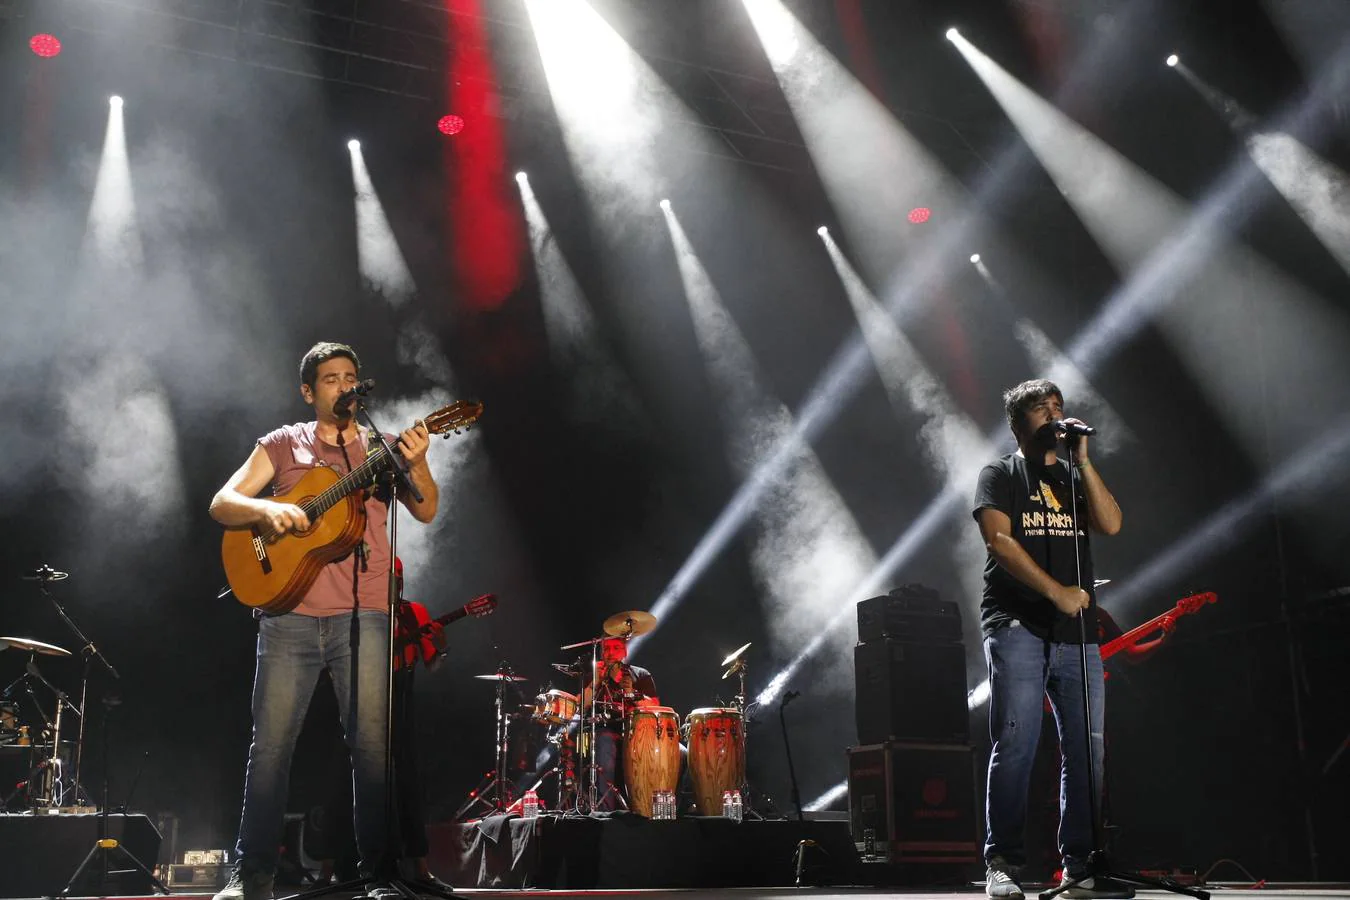 La cuarta jornada del festival Música en Grande 2018, que se celebró ayer en los Campos de El Malecón de Torrelavega, estuvo marcada por los ritmos y las canciones de dos grupos de referencia dentro del pop rock en la escena musical española, con los conciertos de Estopa y Bebe.